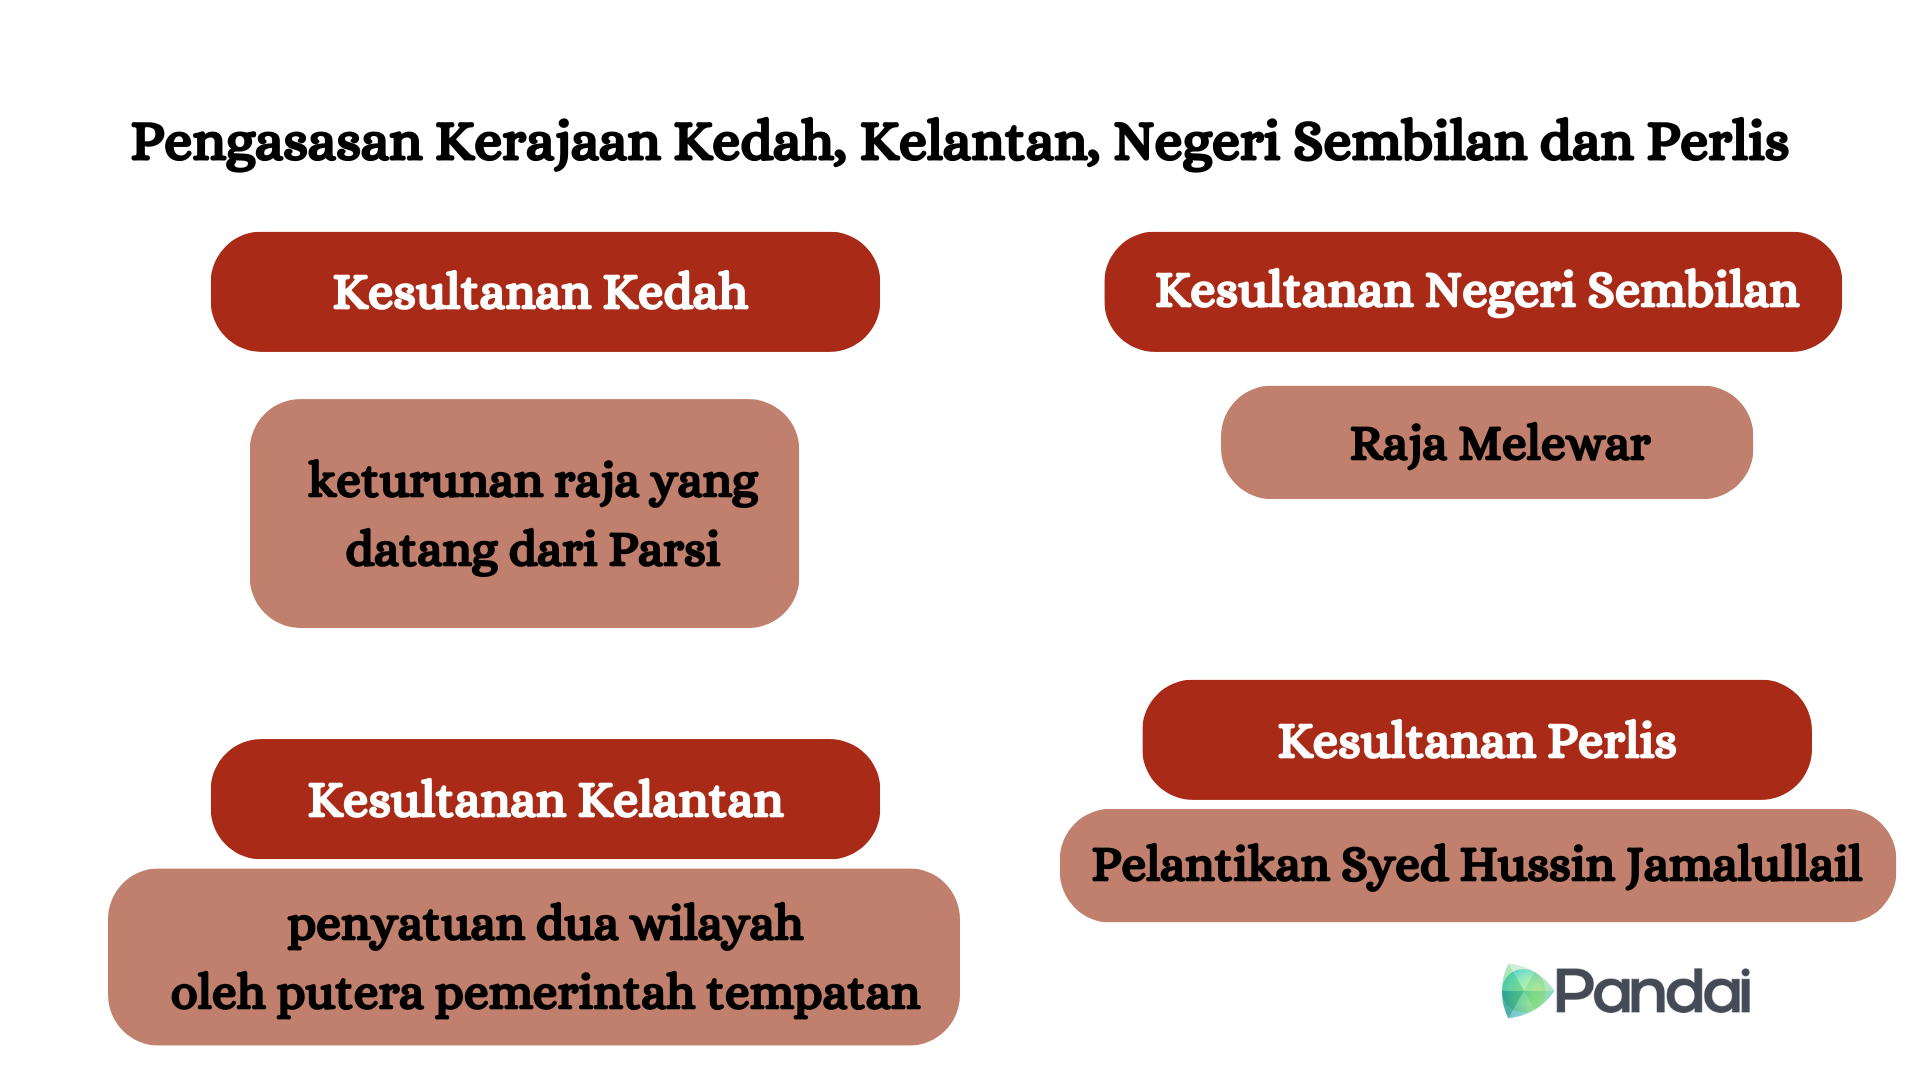 08-01: Pengasasan Kerajaan Kedah, Kelantan, Negeri Sembilan dan Perlis